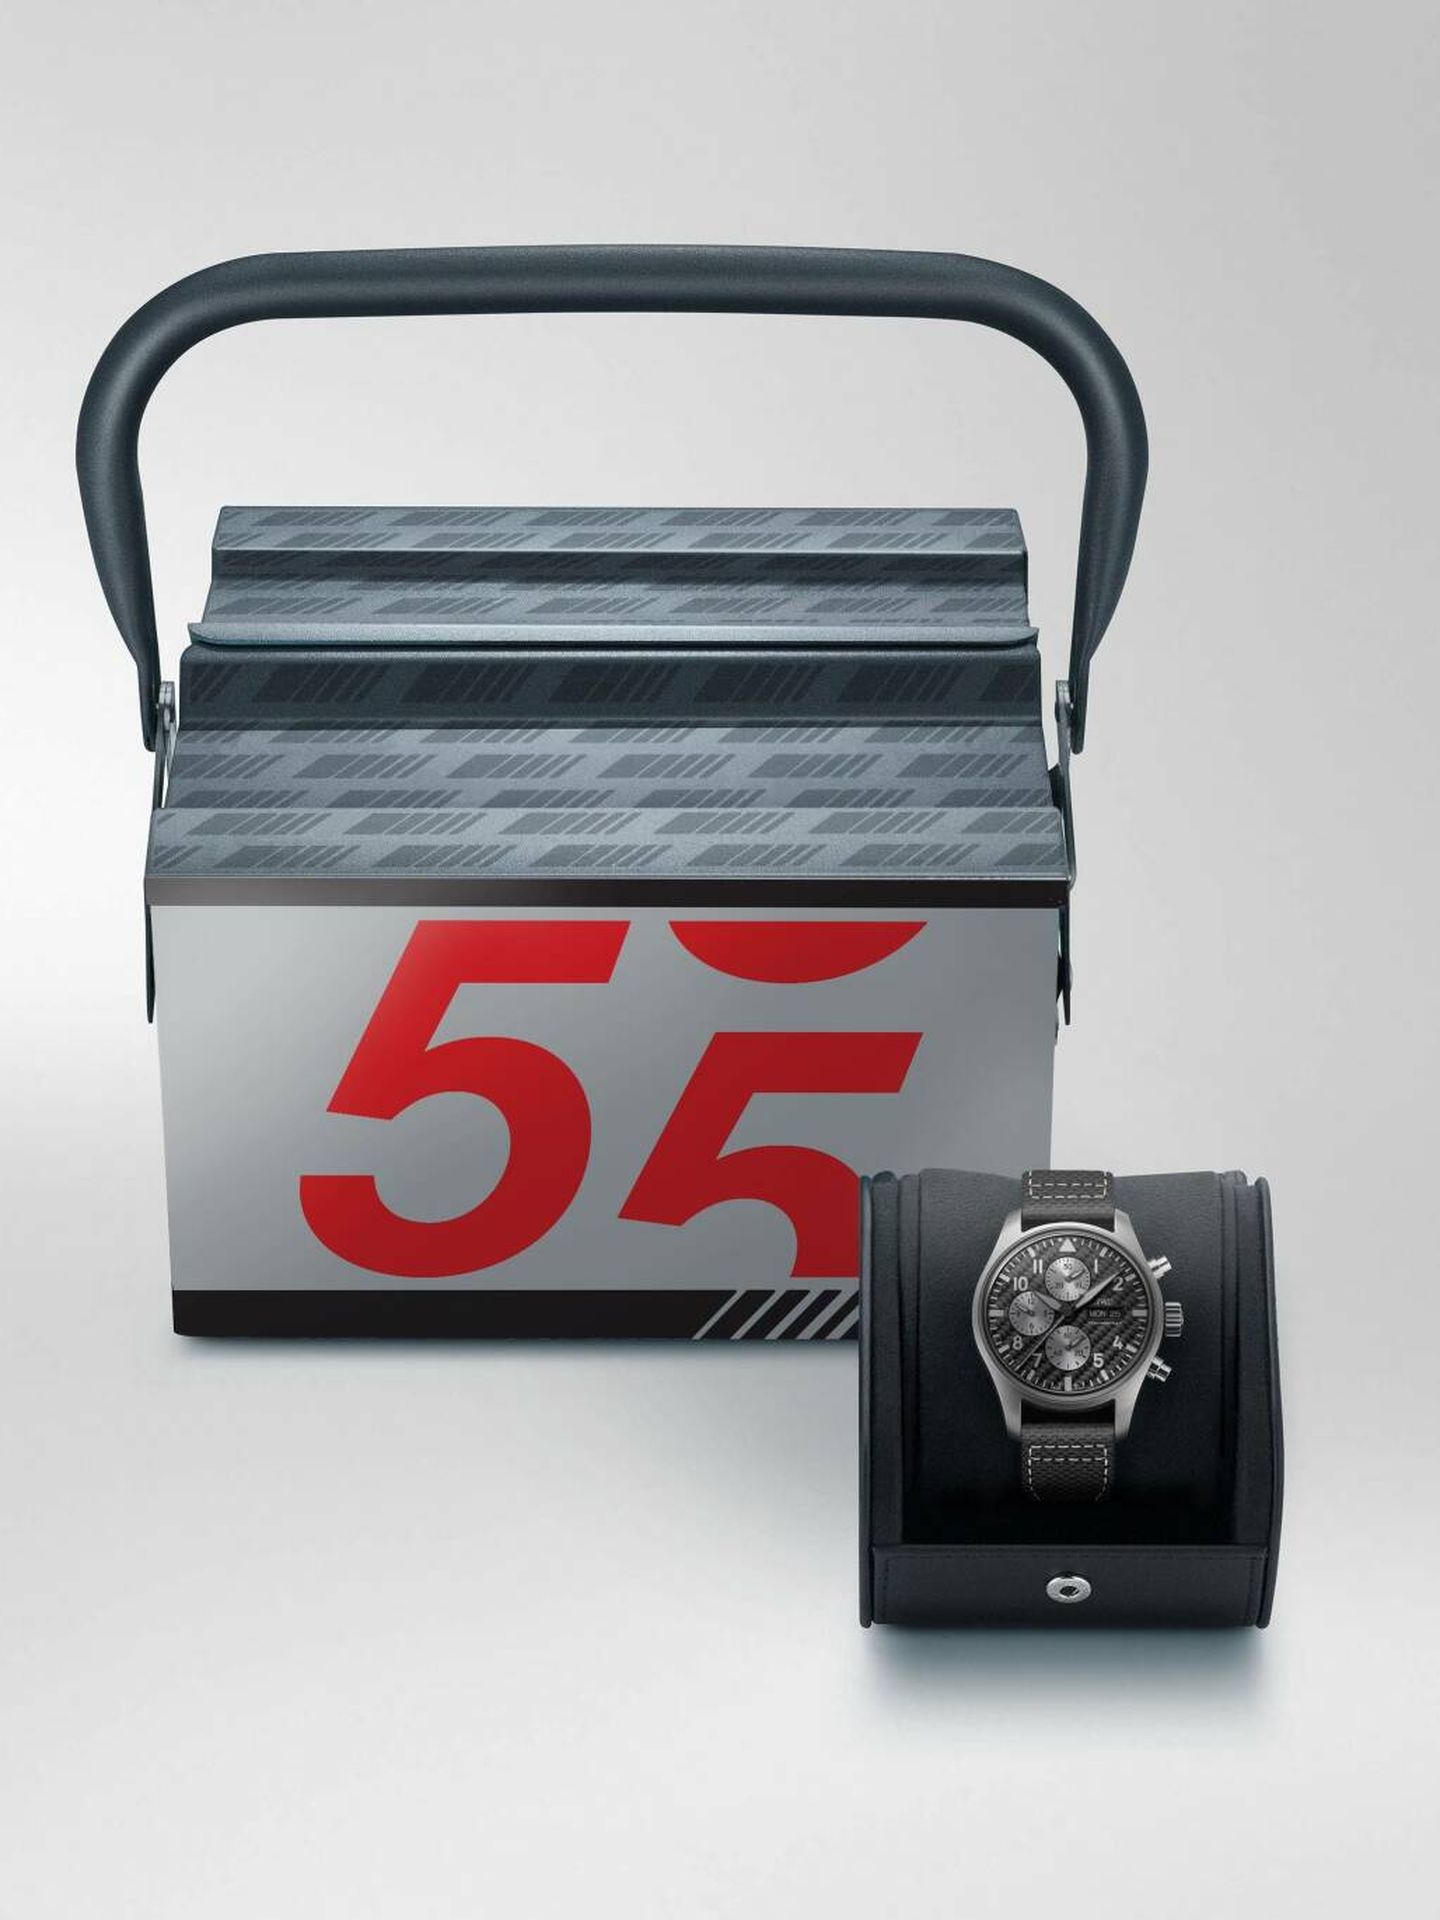 El relojero suizo IWC, socio de Mercedes-AMG, añade un reloj de aviador Edición AMG.